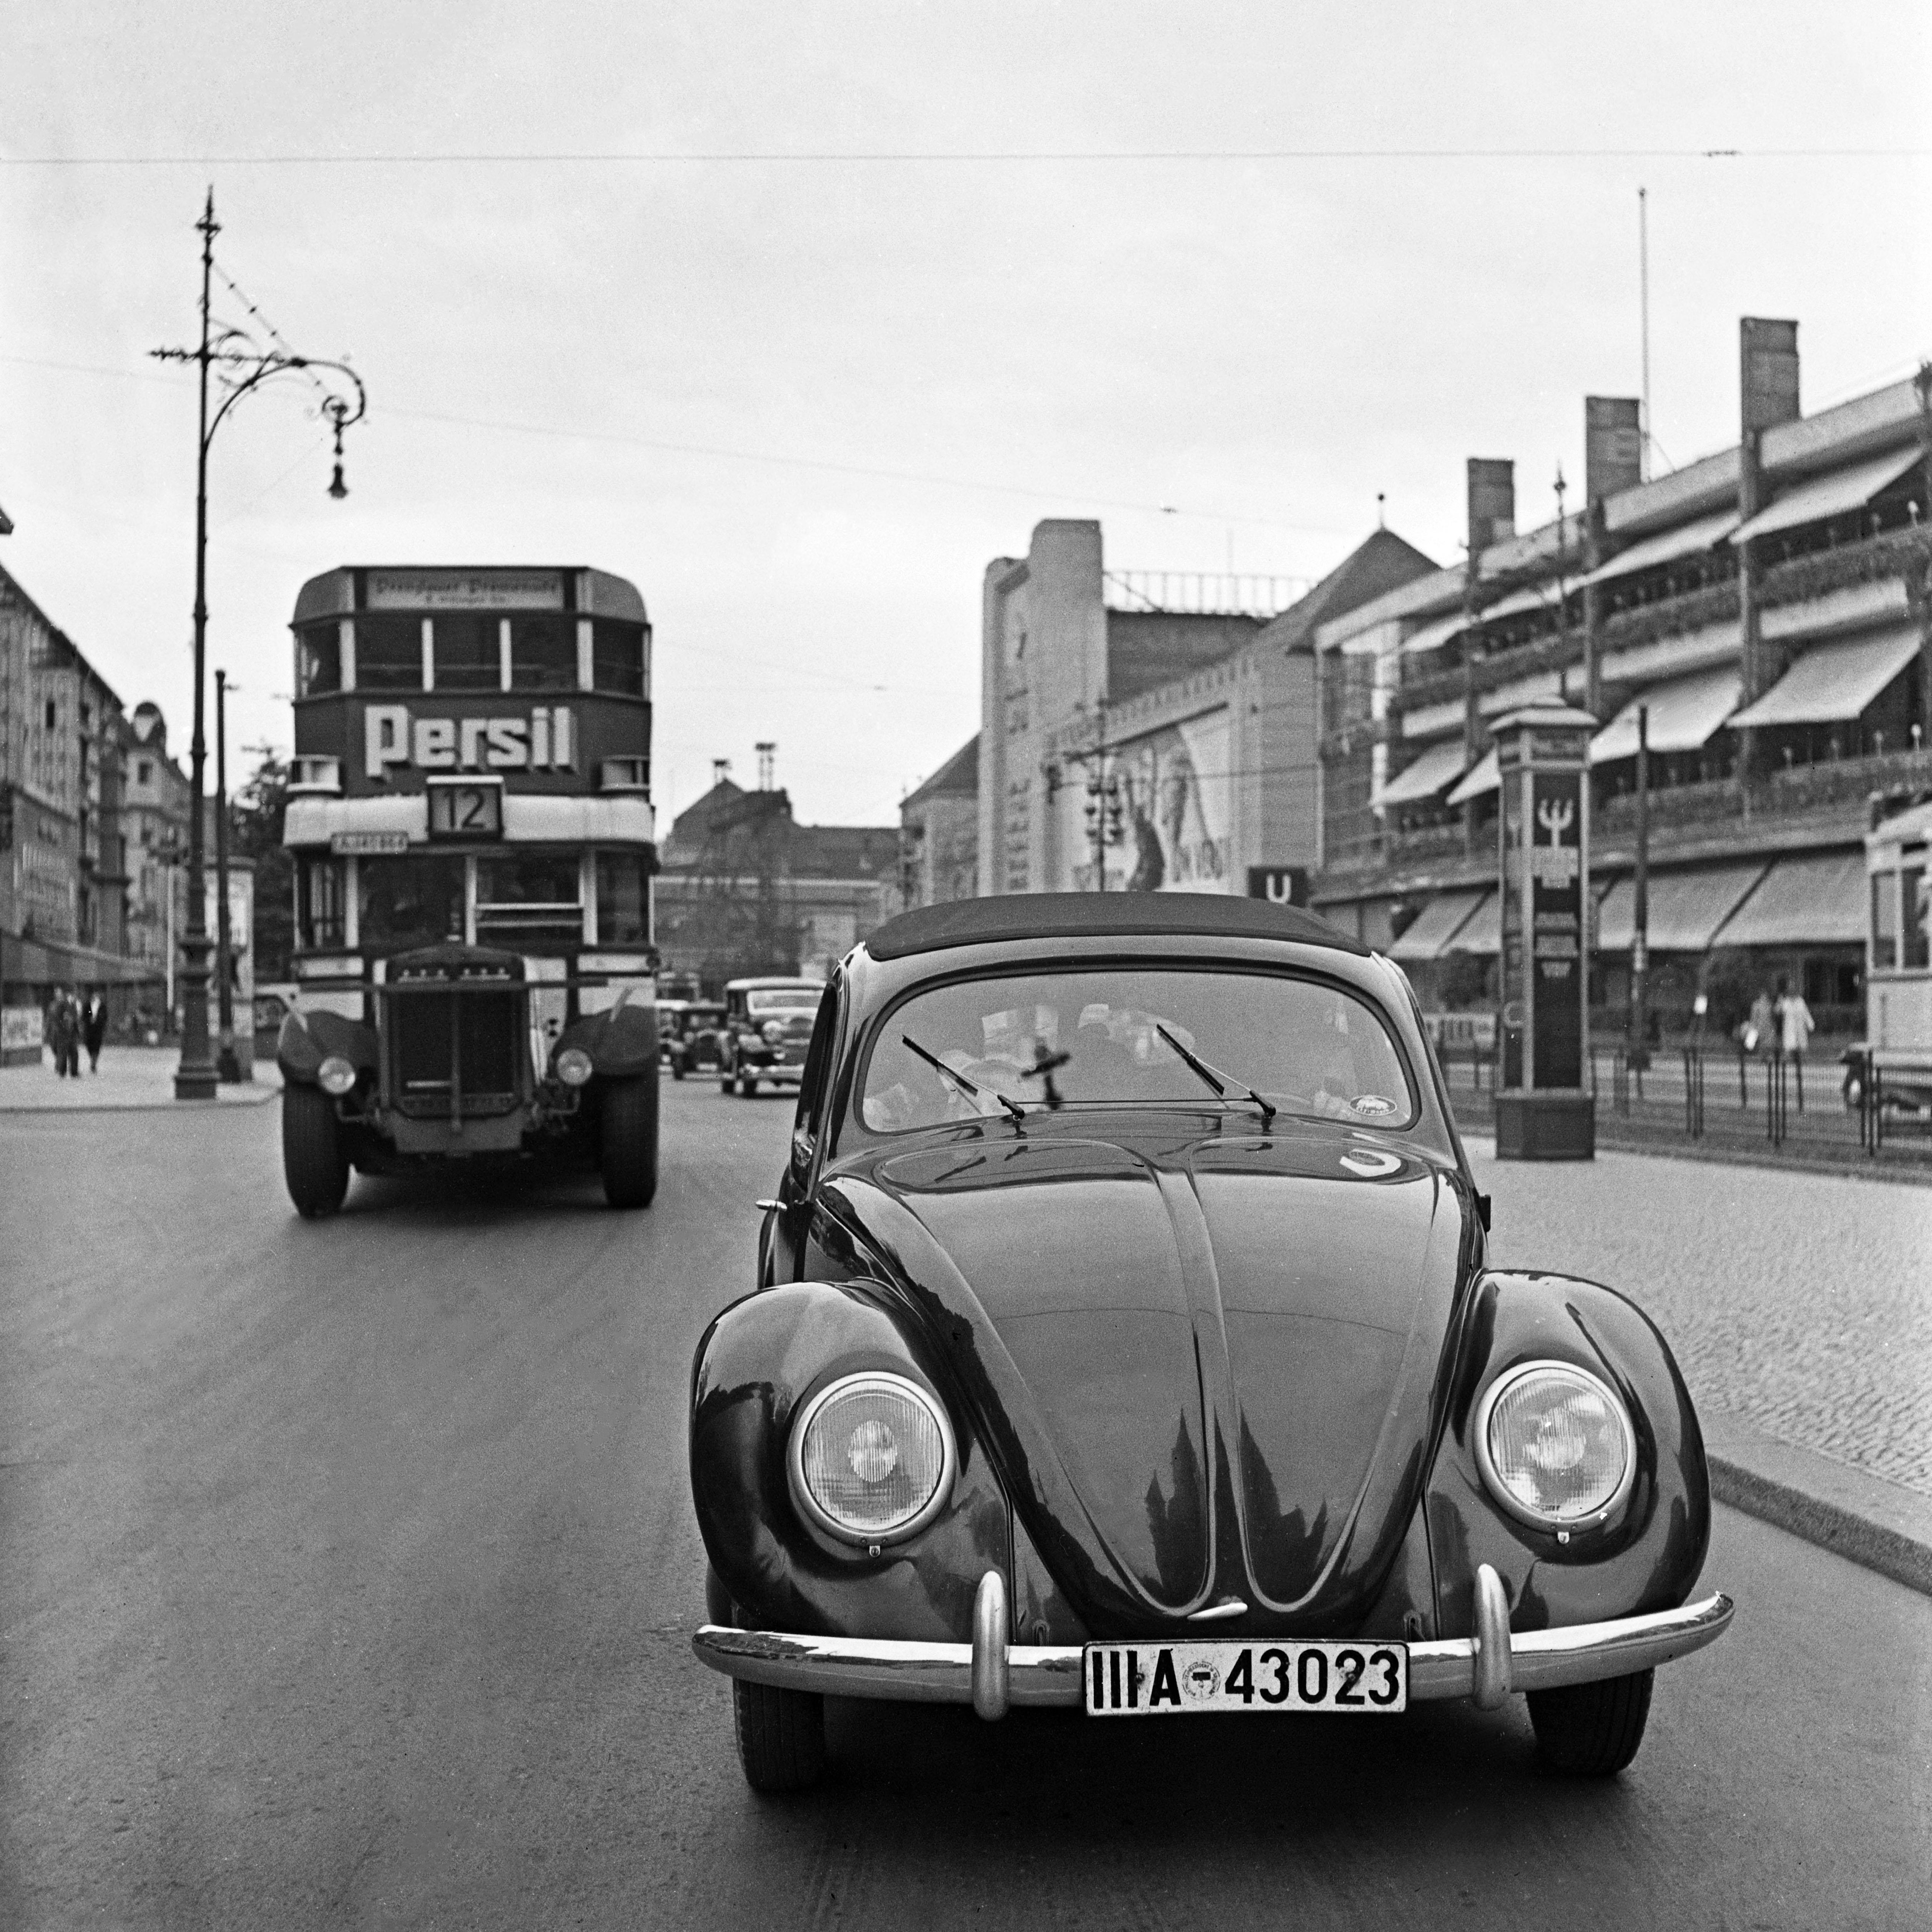 Black and White Photograph Karl Heinrich Lämmel - Le scarabée Volkswagen dans les rues de Berlin, Allemagne 1939 Imprimé plus tard 